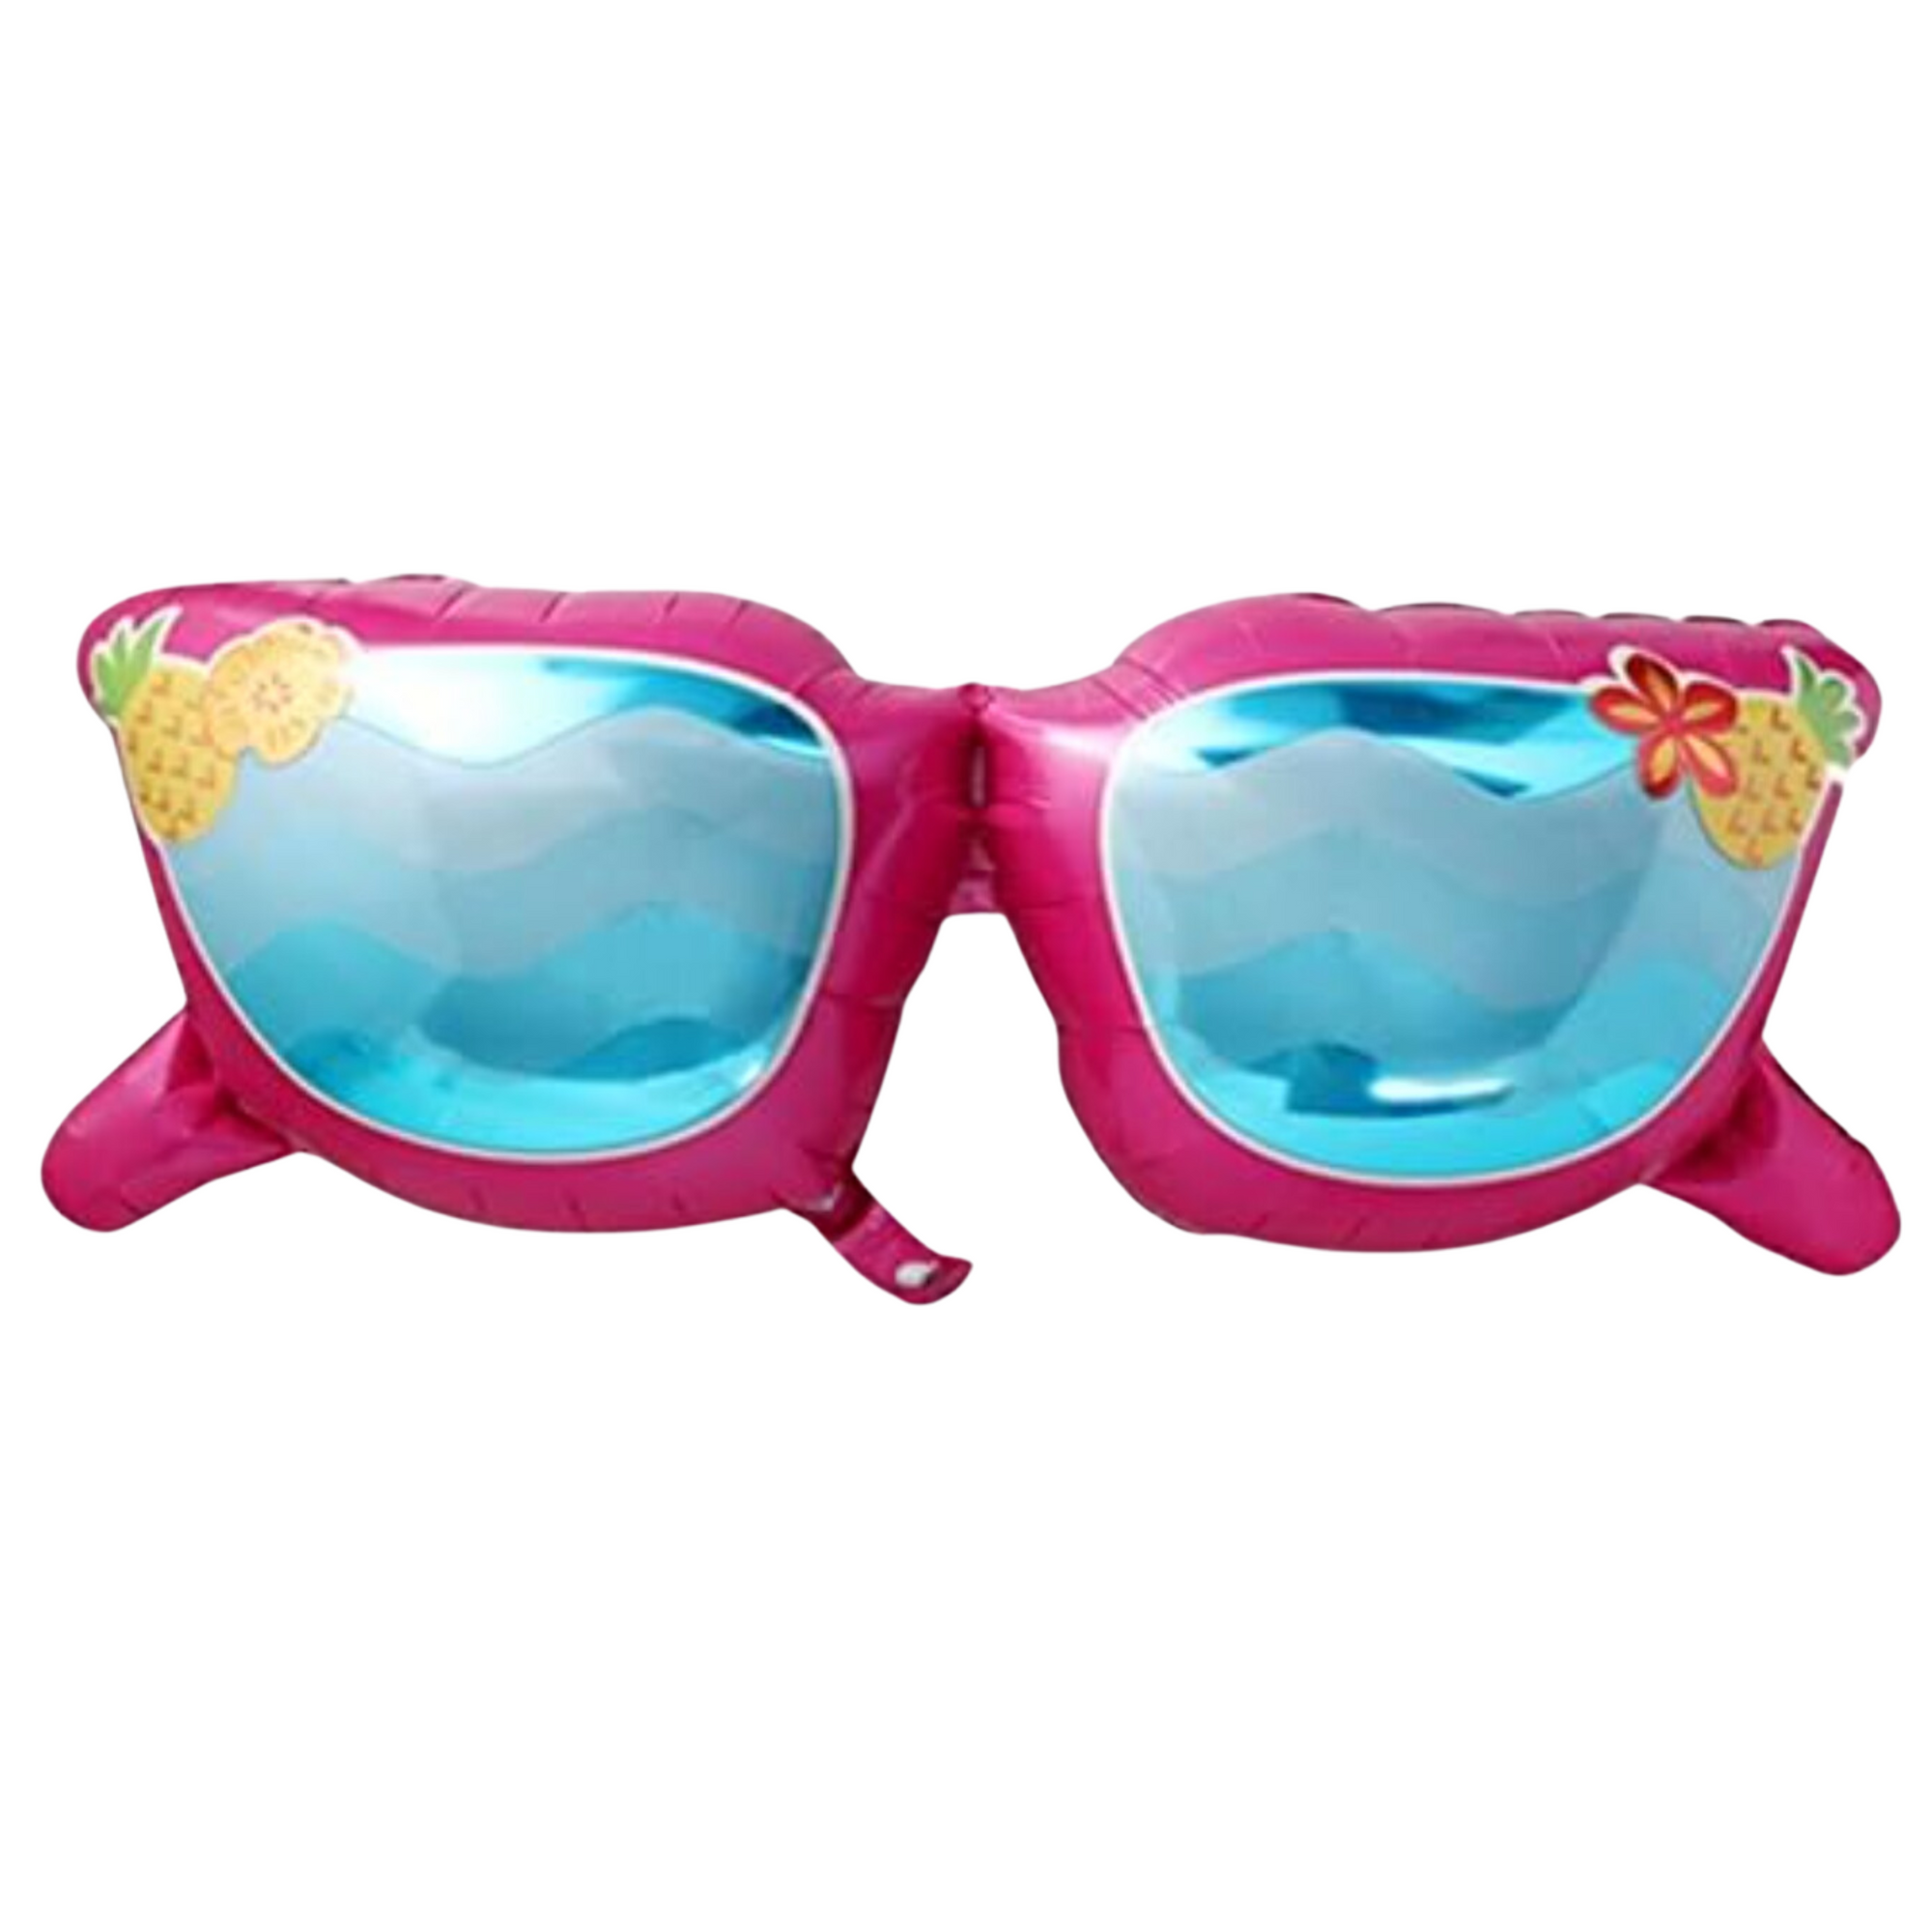 Mylar Sunglasses - Pink